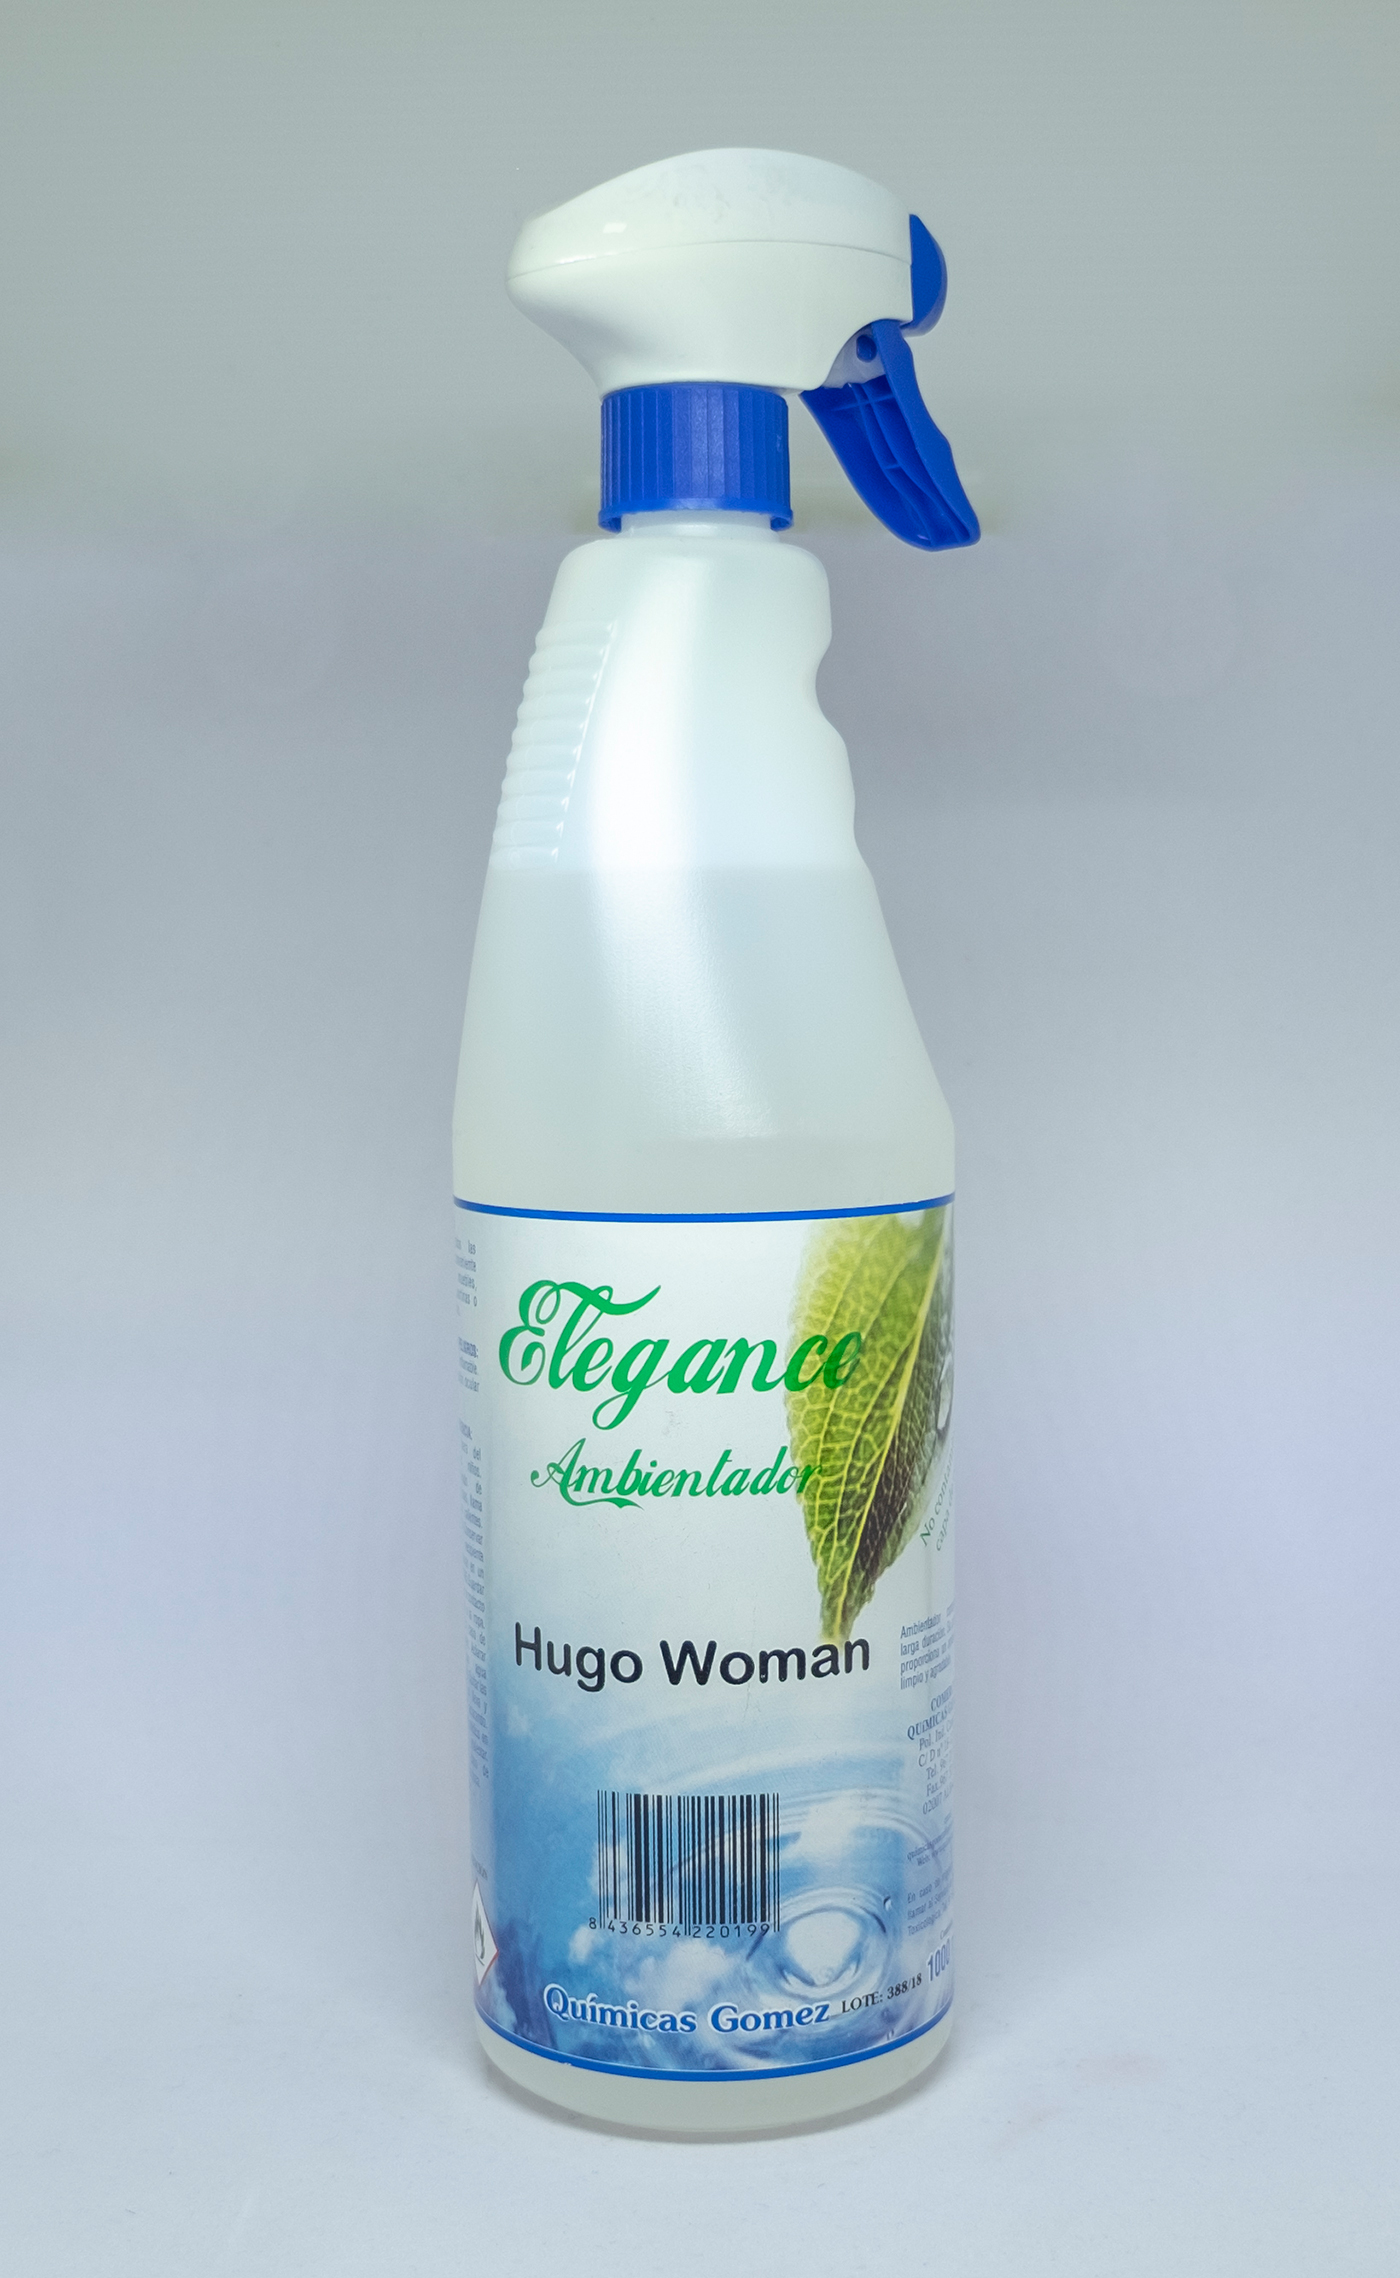 Ambientador Hugo Woman